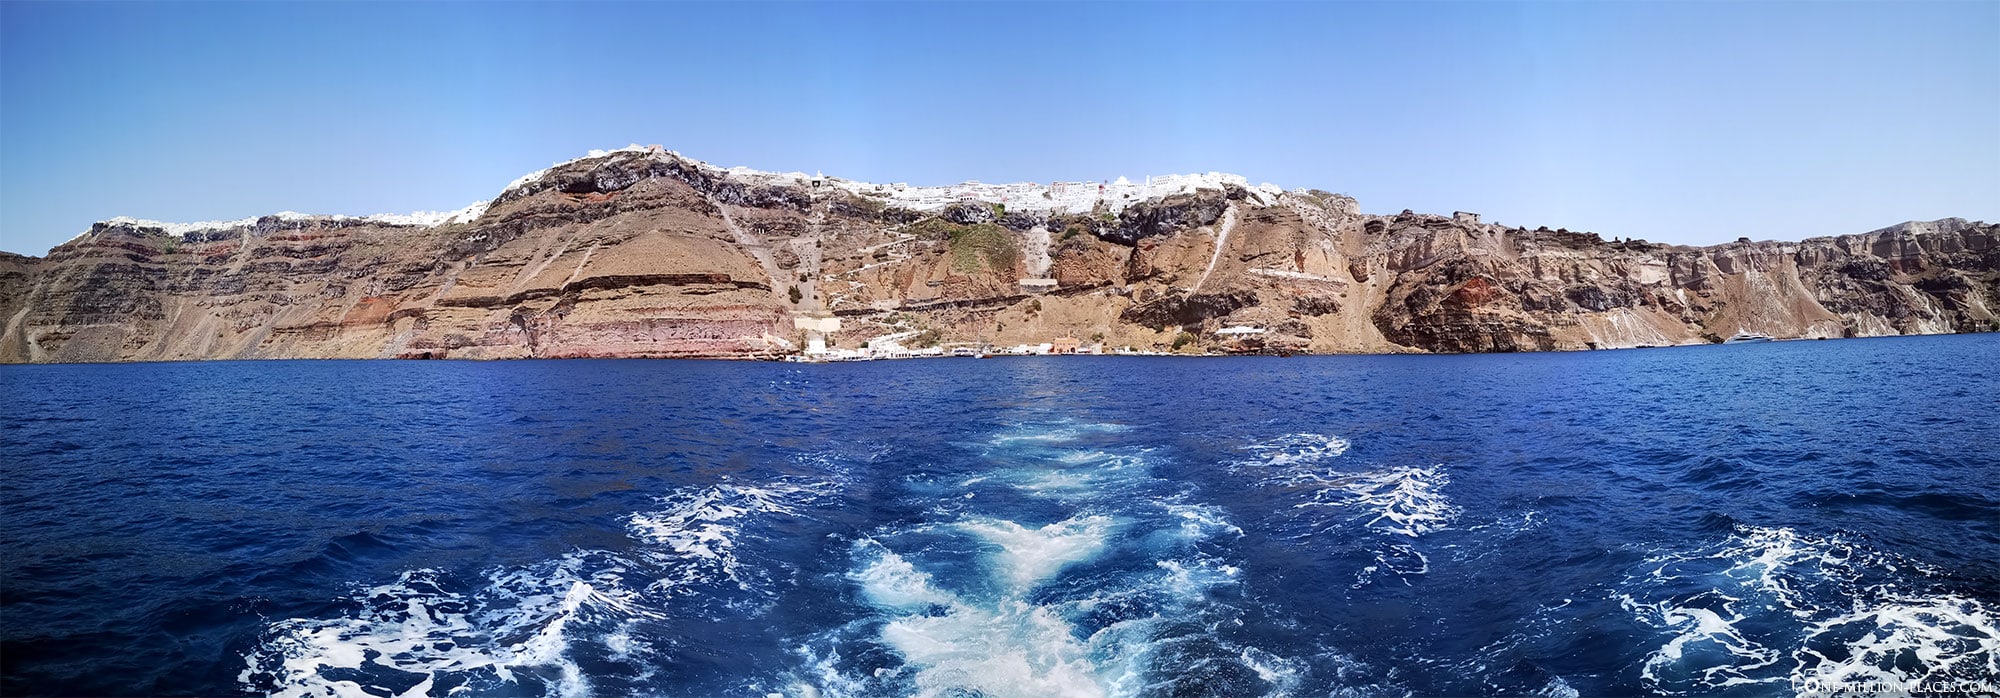 Steilküste von Fira, Fira, Thira, Santorini, Griechische Inseln, Griechenland, Kreuzfahrt, Reisebericht